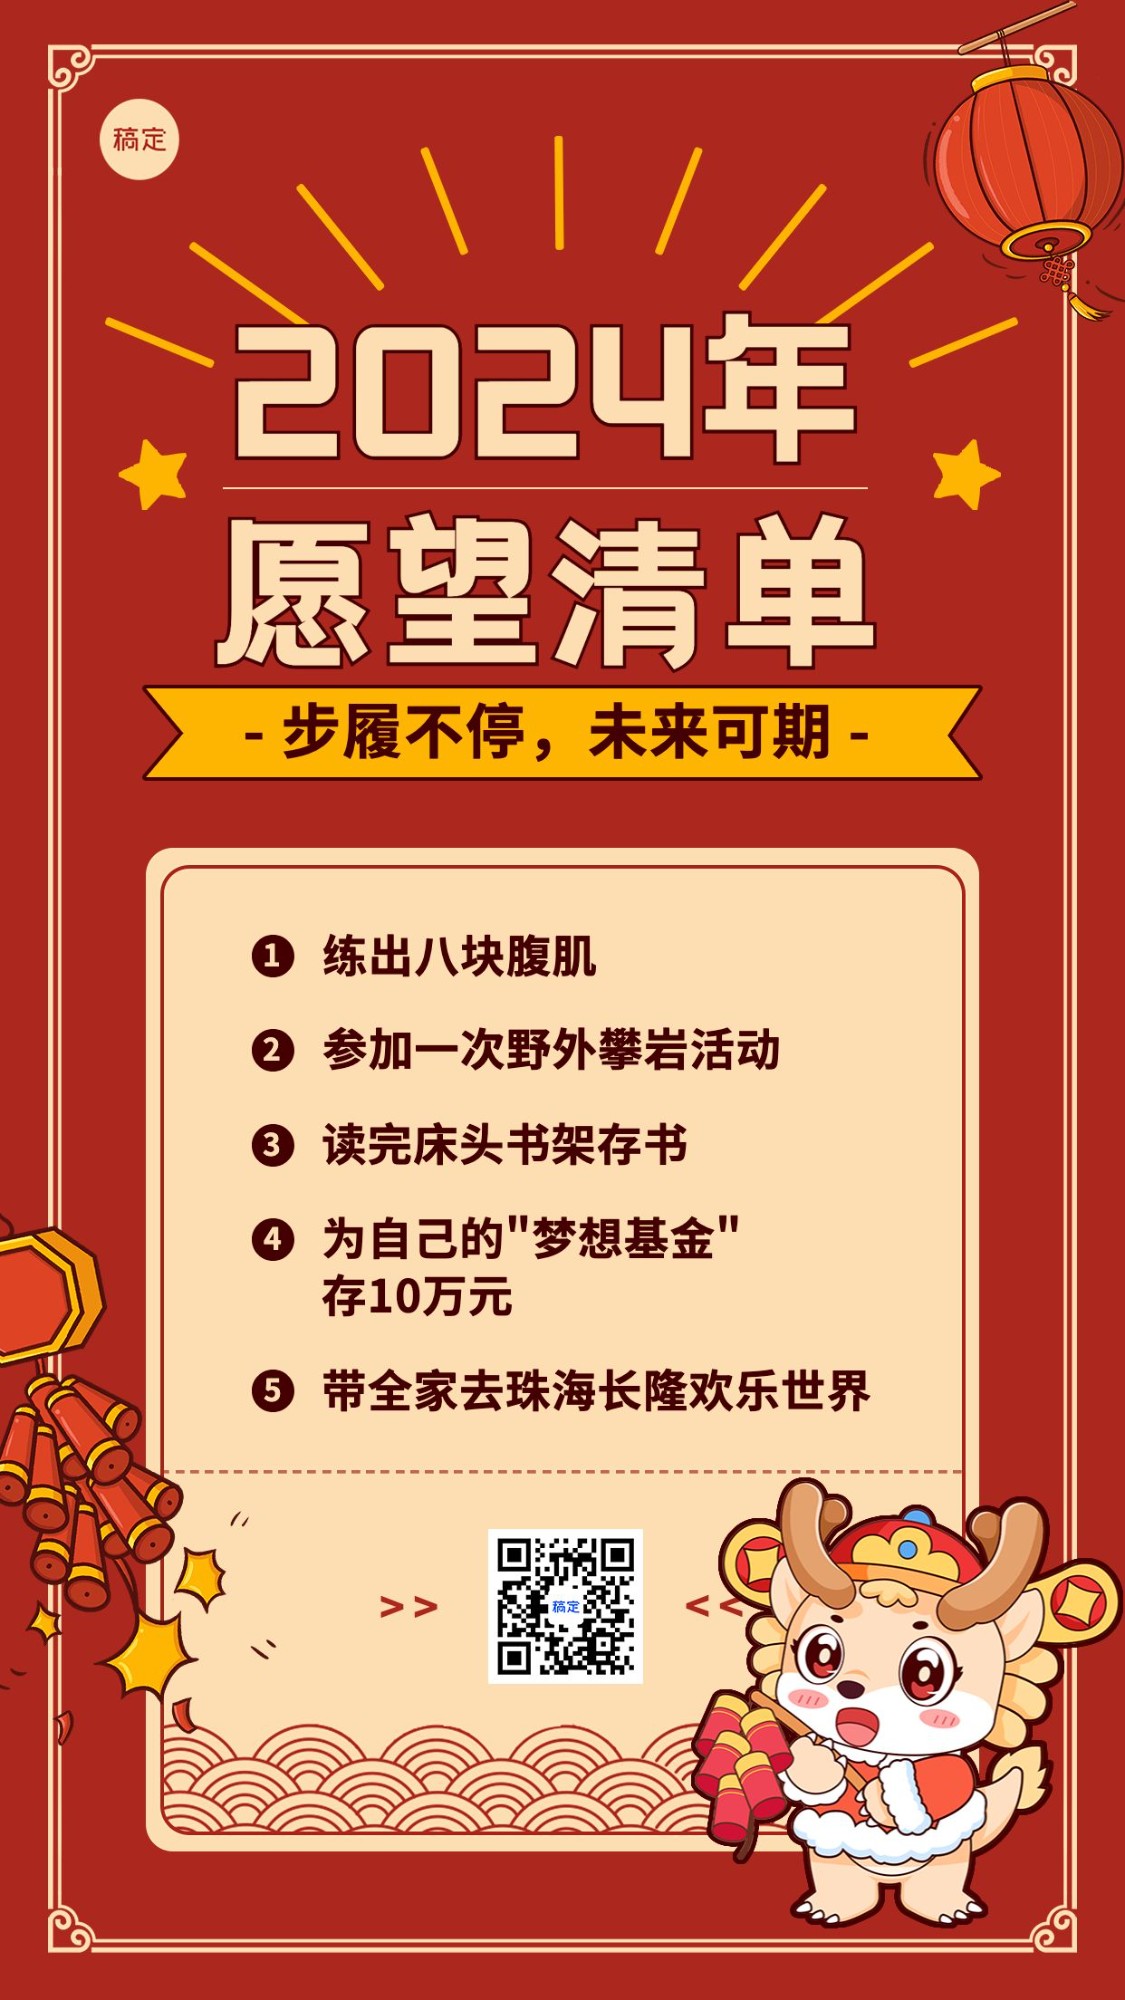 春节新年愿望清单手机海报预览效果